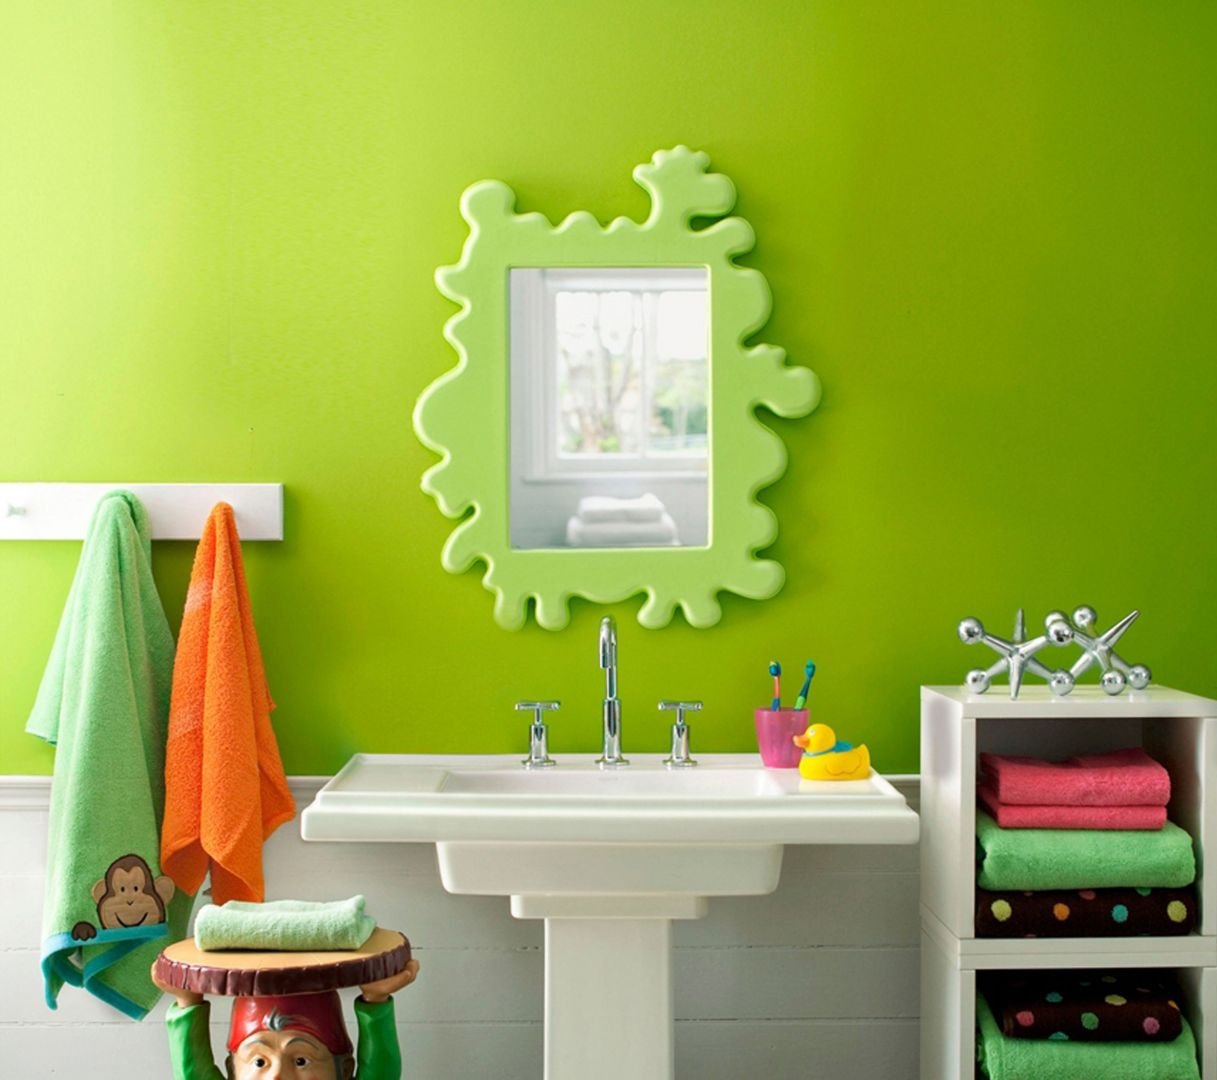 Какой краской можно покрасить в ванной. Крашенные стены в ванной. Отделка ванной краской. Краска для ванной комнаты для стен. Декорирование стен в ванной краской.